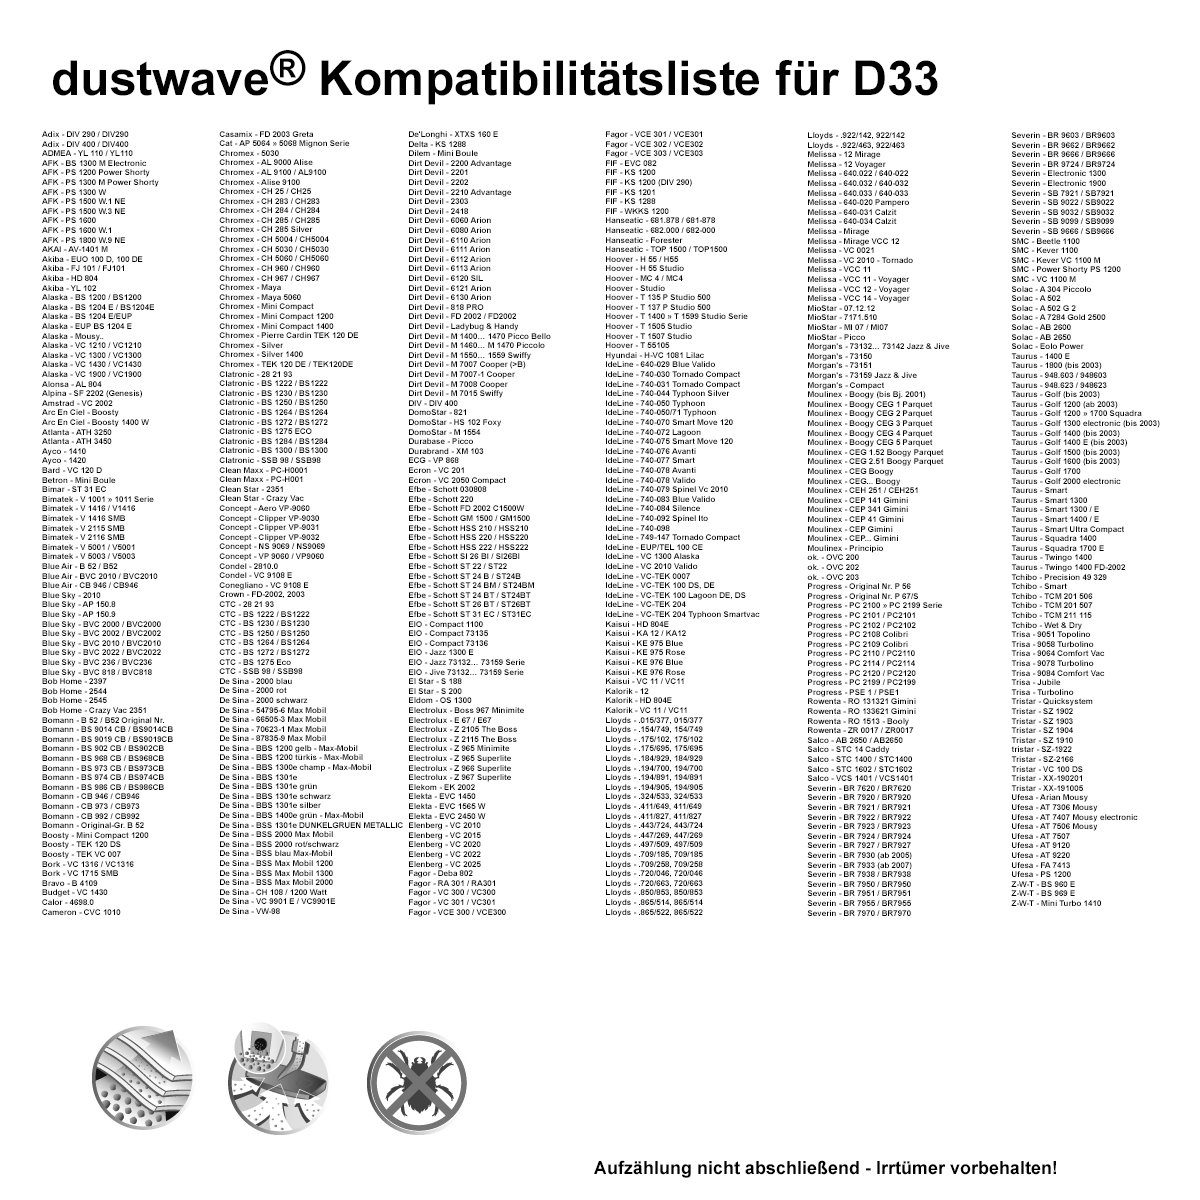 Dustwave Staubsaugerbeutel (ca. 804 zuschneidbar) 1 AL Standard für passend Hepa-Filter - Test-Set, - Alonsa 1 Test-Set, Staubsaugerbeutel Alonsa 1 15x15cm St., + 804, AL